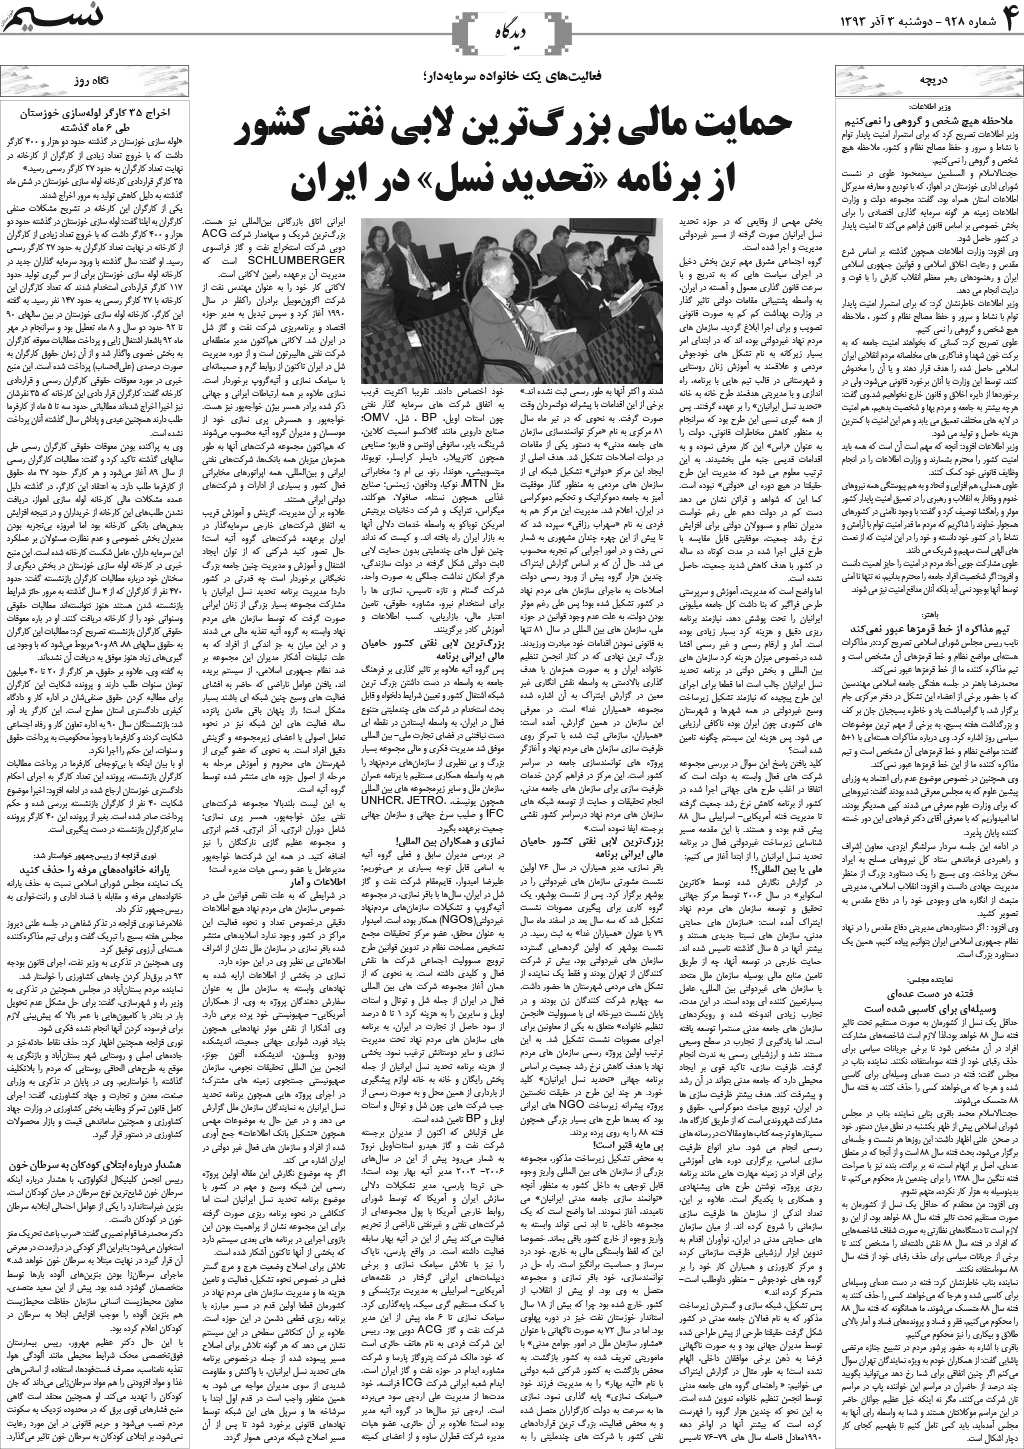 صفحه دیدگاه روزنامه نسیم شماره 928